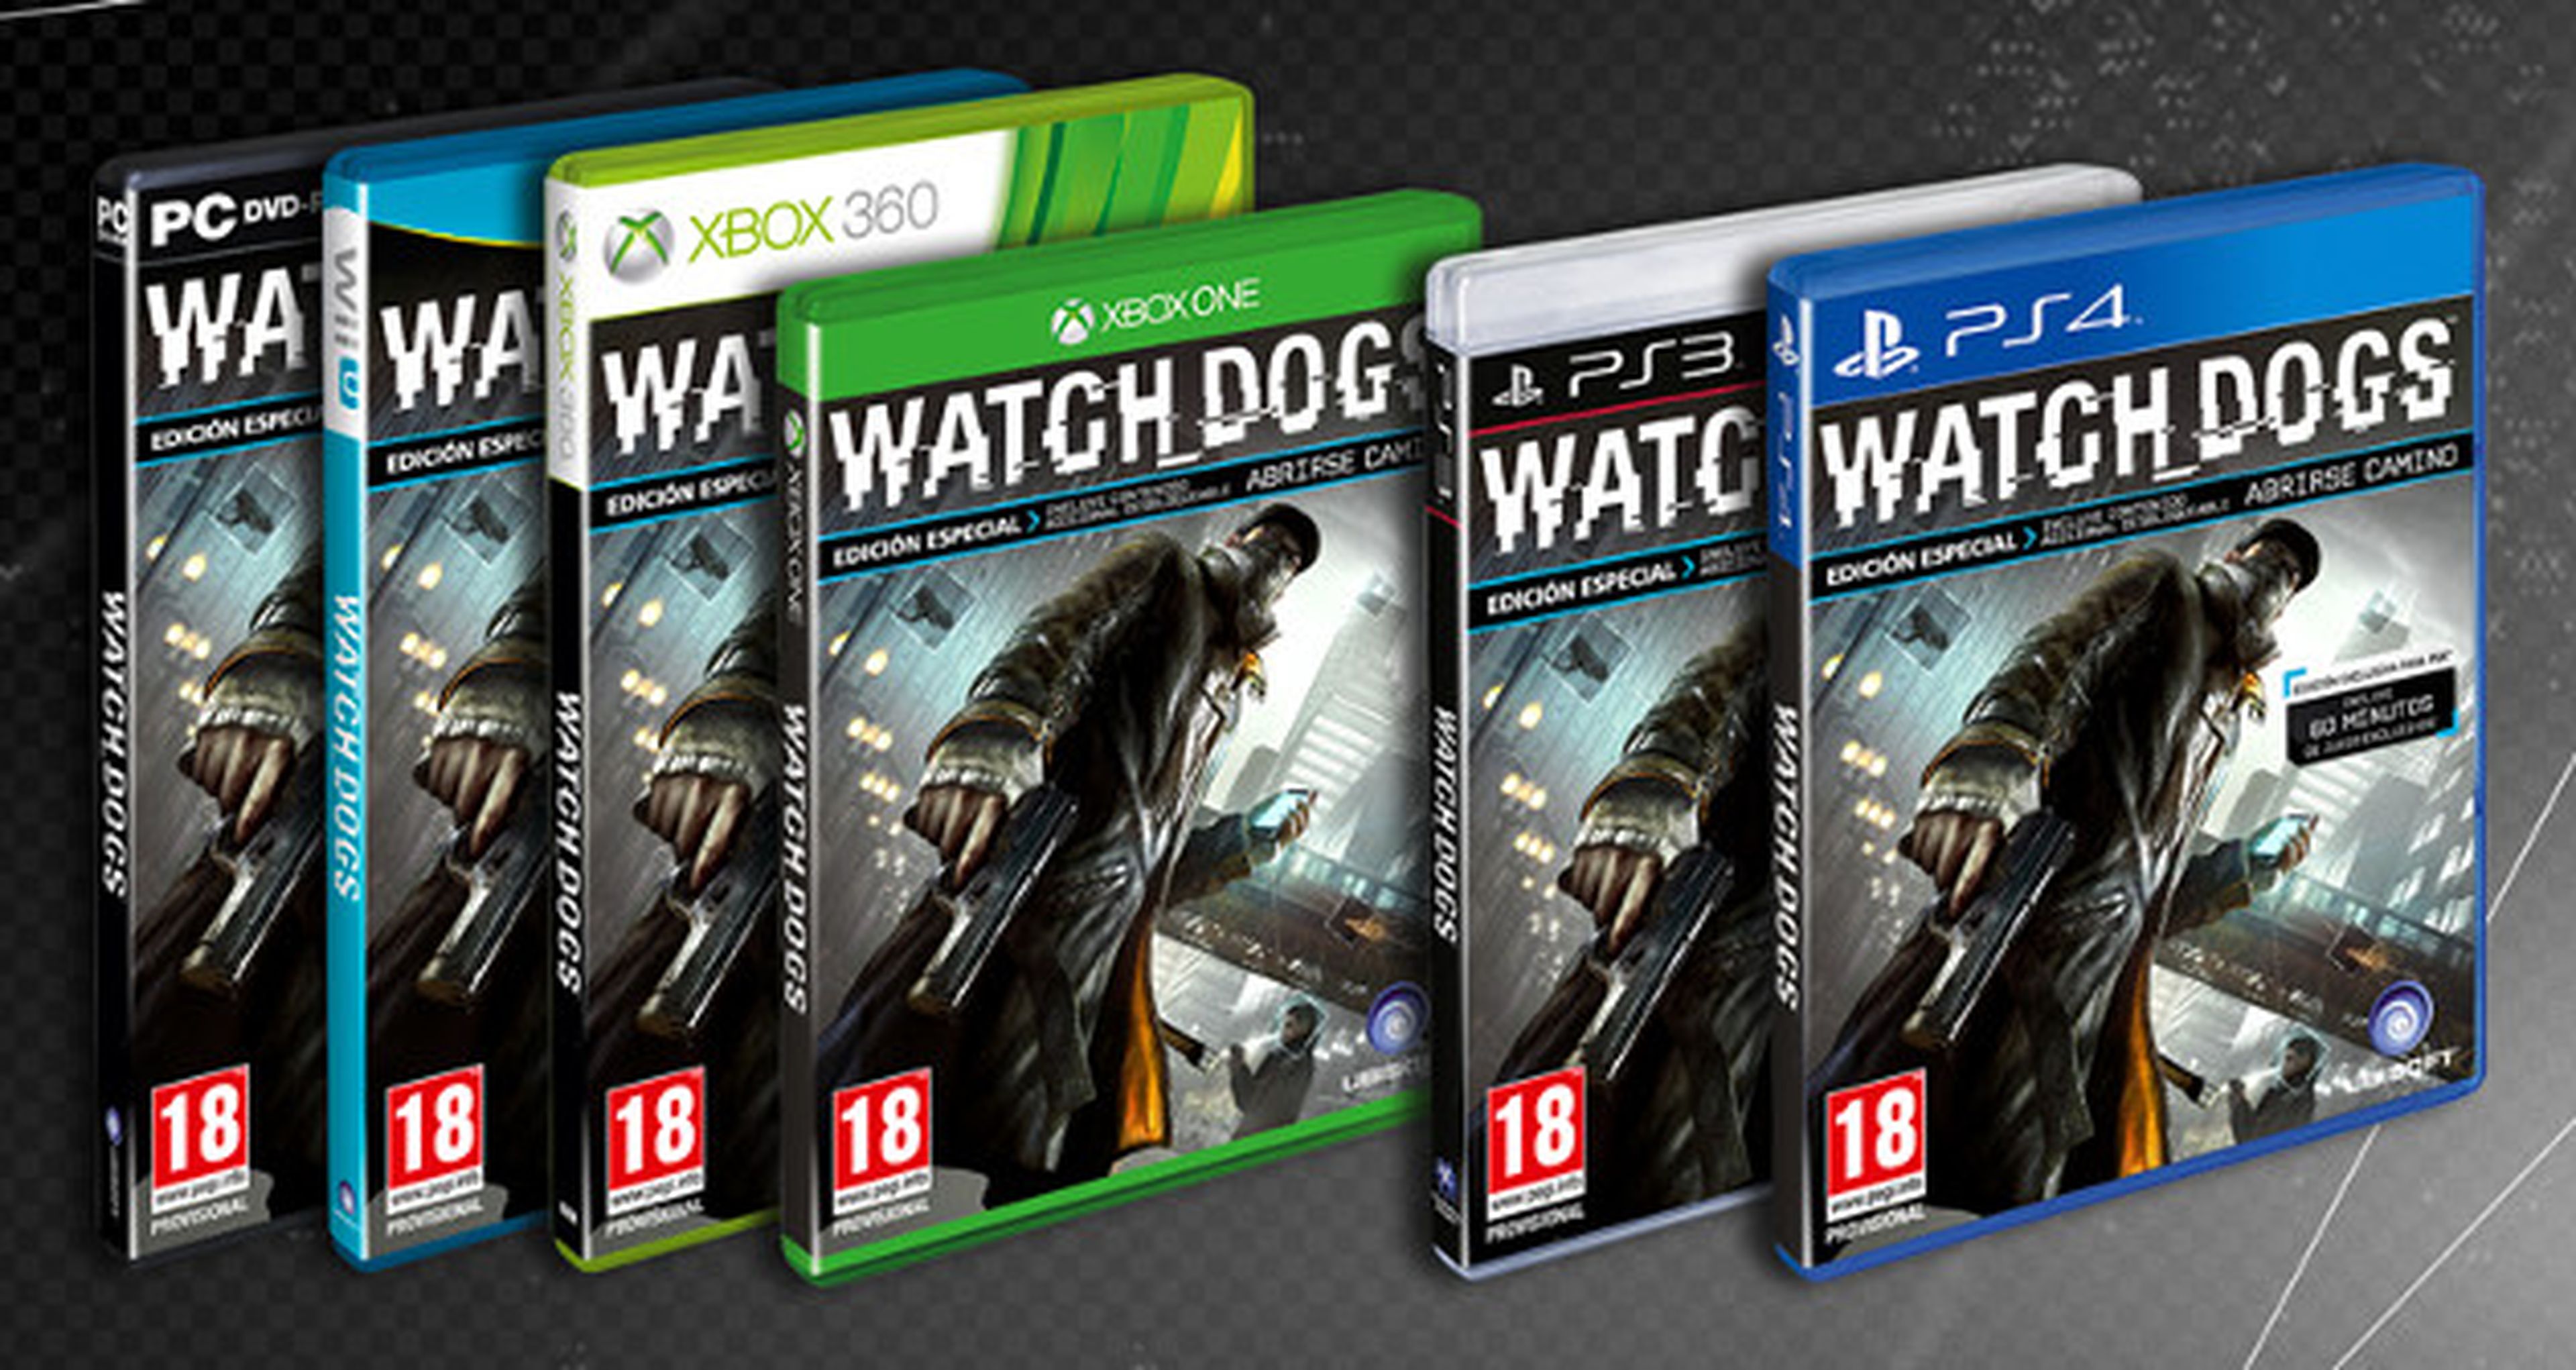 Watch Dogs tendrá una edición exclusiva en Game